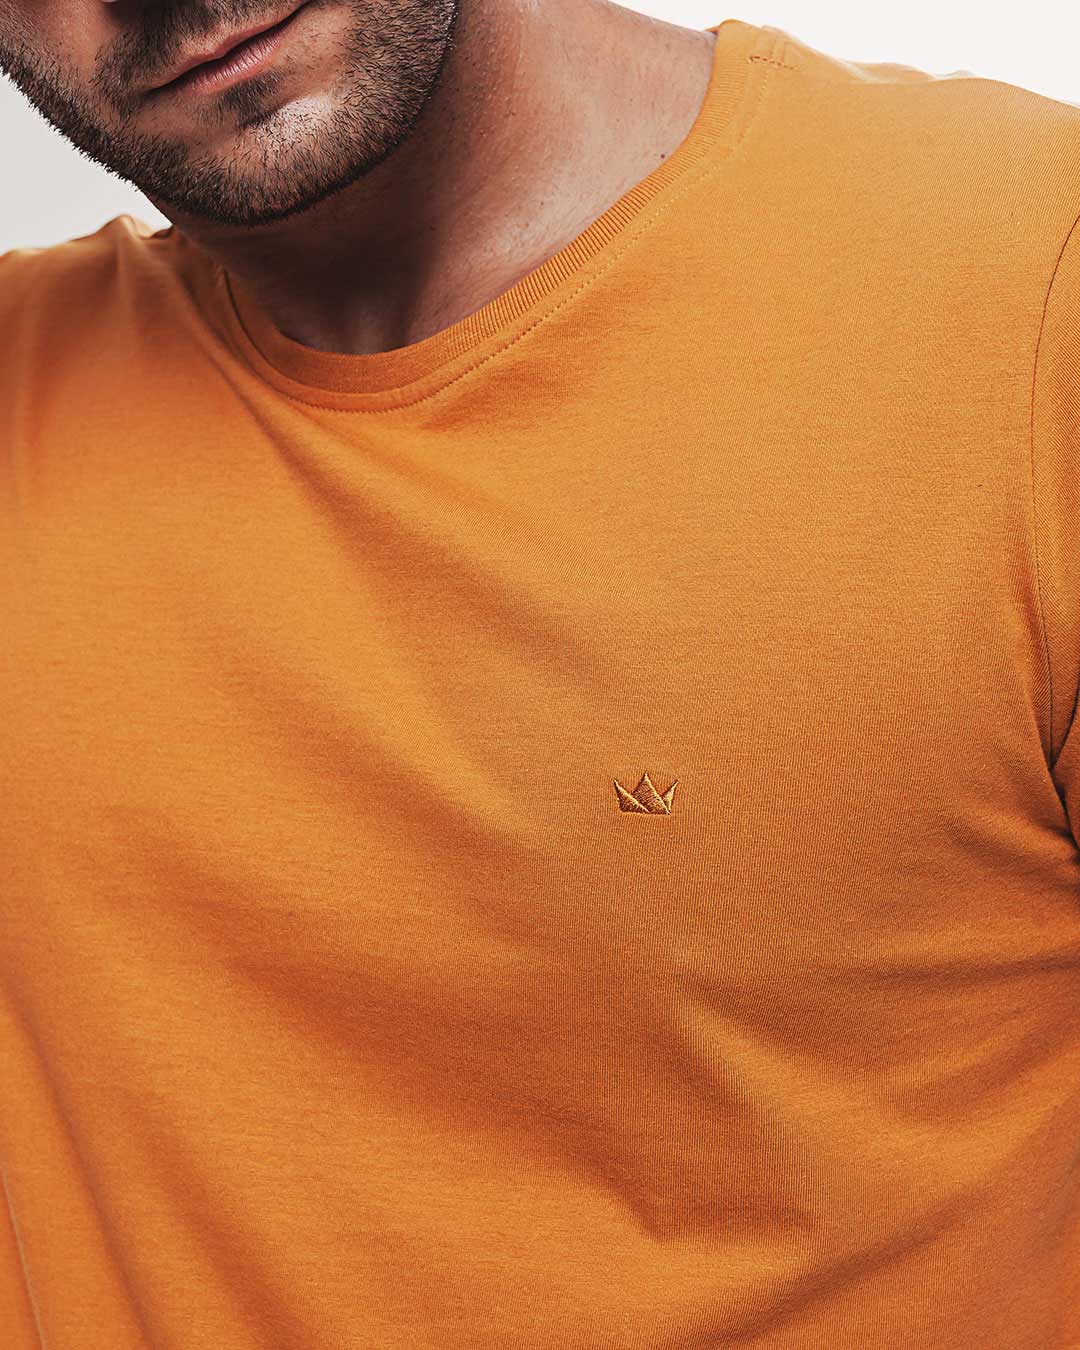 Camiseta Algodão 301 Amarela Ezutus Compre roupas estilosas na Amorope, site seguro, frete grátis e parcelamento sem juros. Moda feminina e masculina num só lugar.